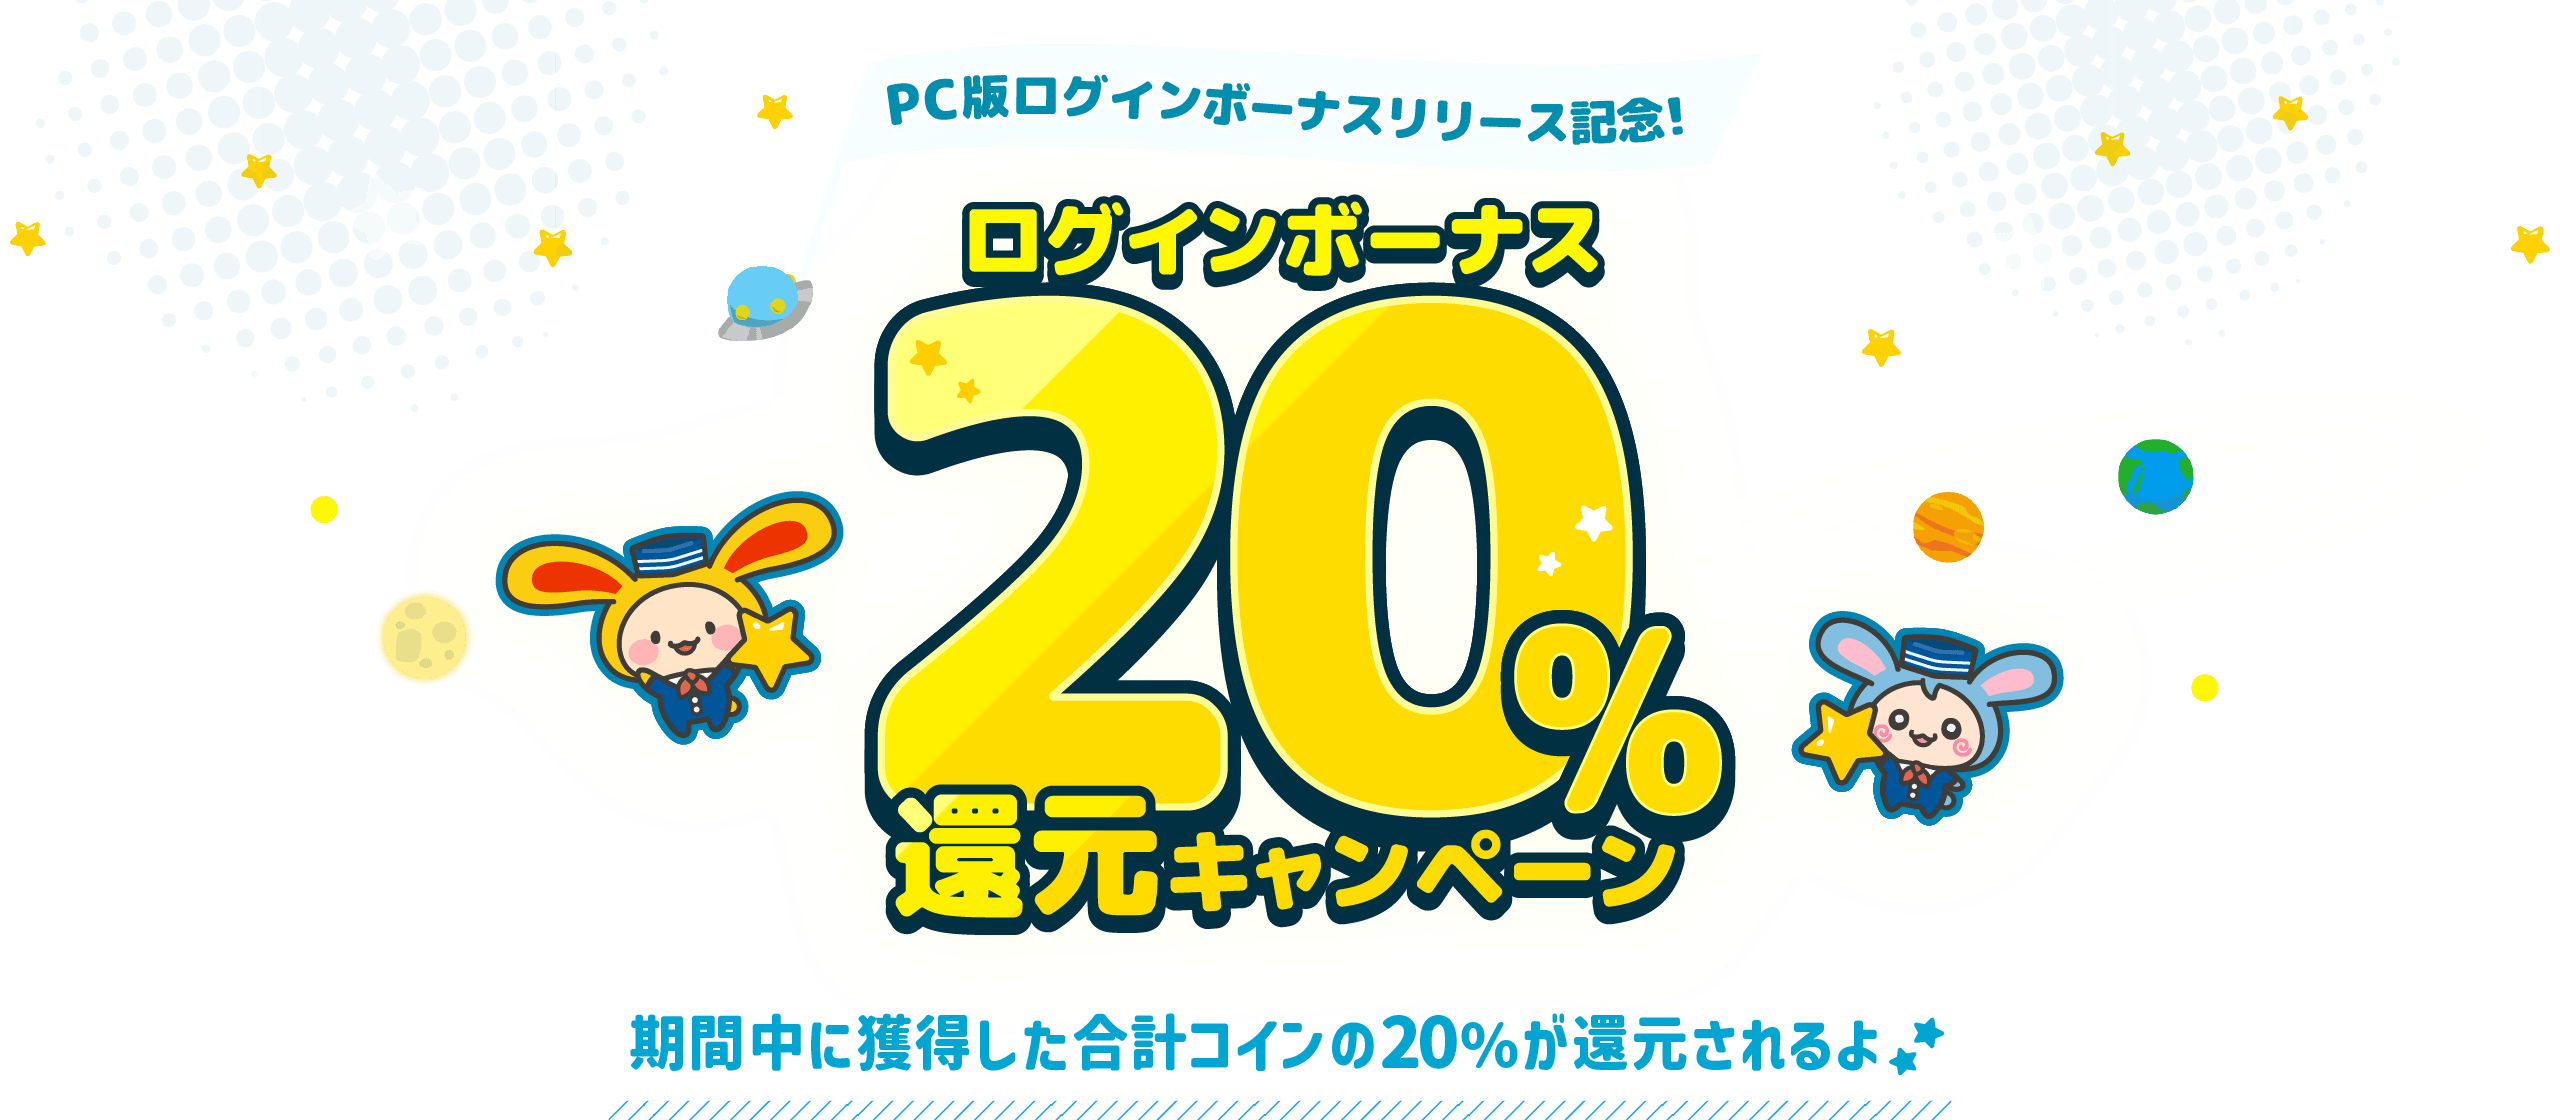 PC版ログインボーナスリリース記念！ログインボーナス20%還元キャンペーン 期間中に獲得した合計コインの20%が還元されるよ！